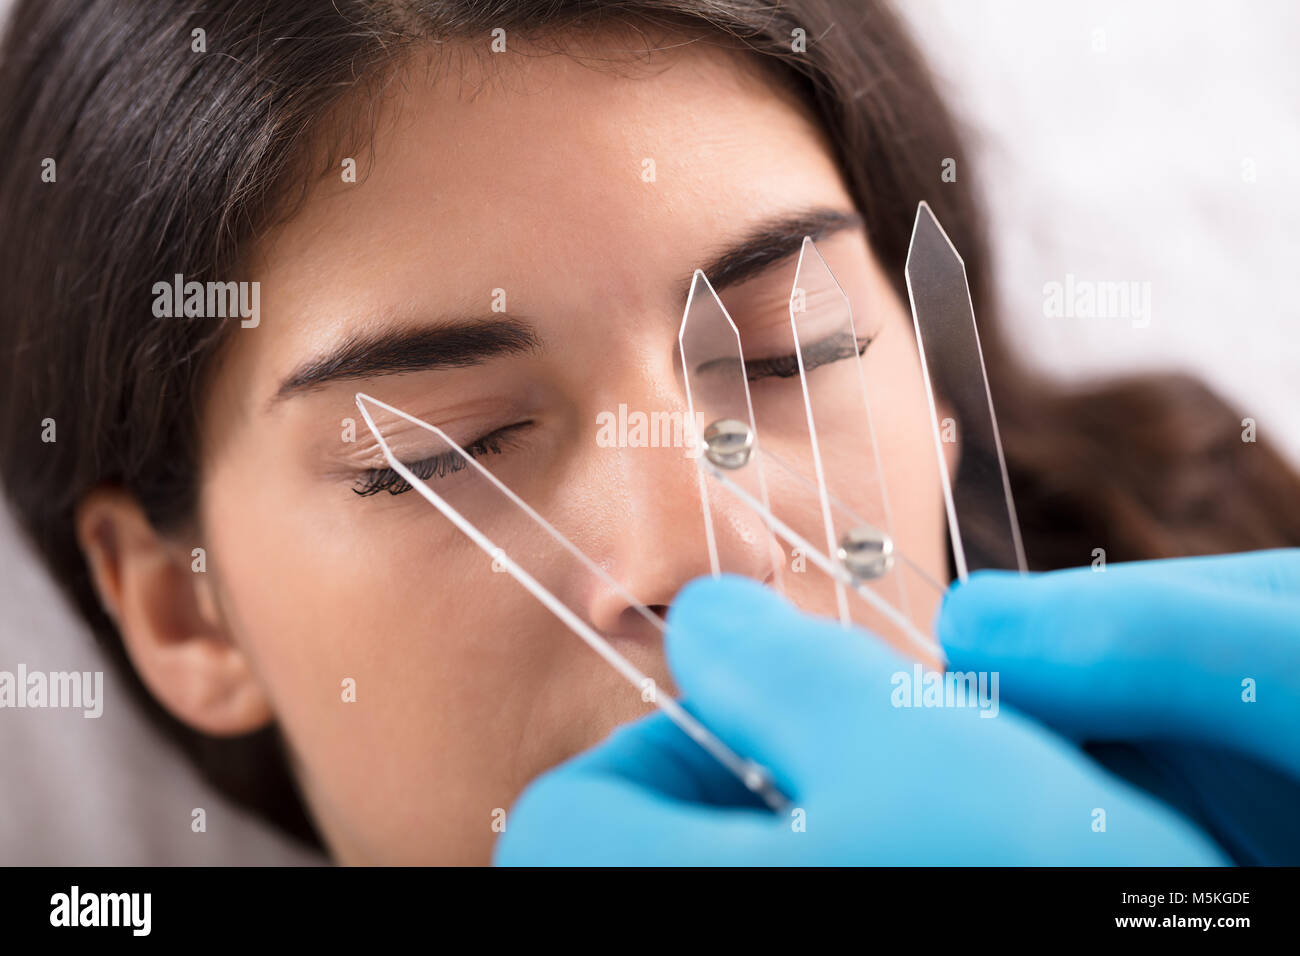 Cosmetologo misurando la simmetria di una donna e le sopracciglia con un attrezzo speciale Foto Stock